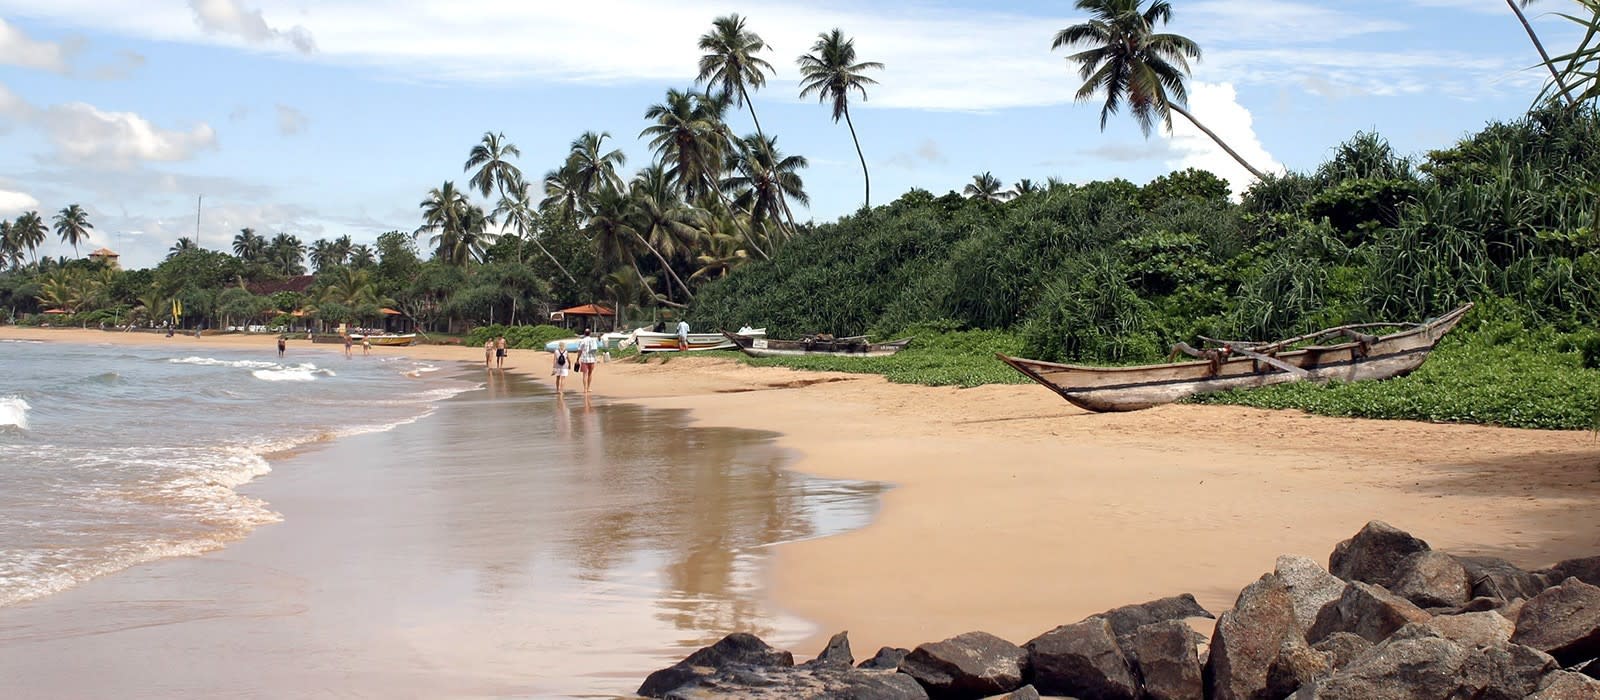 بهترین سواحل سریلانکا